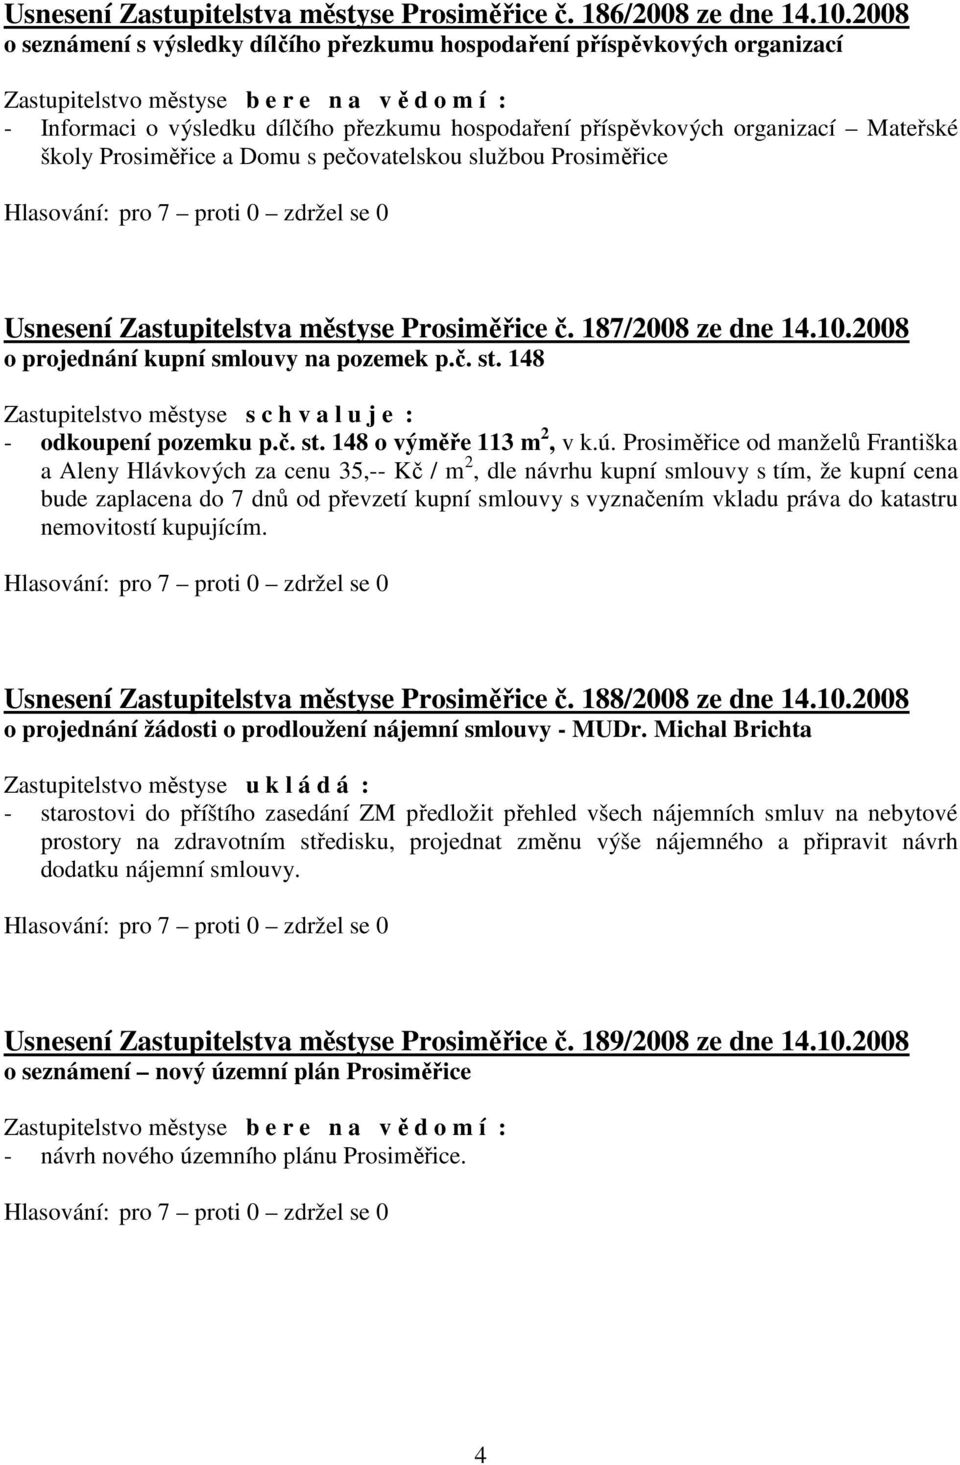 pečovatelskou službou Prosiměřice Usnesení Zastupitelstva městyse Prosiměřice č. 187/2008 ze dne 14.10.2008 o projednání kupní smlouvy na pozemek p.č. st. 148 - odkoupení pozemku p.č. st. 148 o výměře 113 m 2, v k.